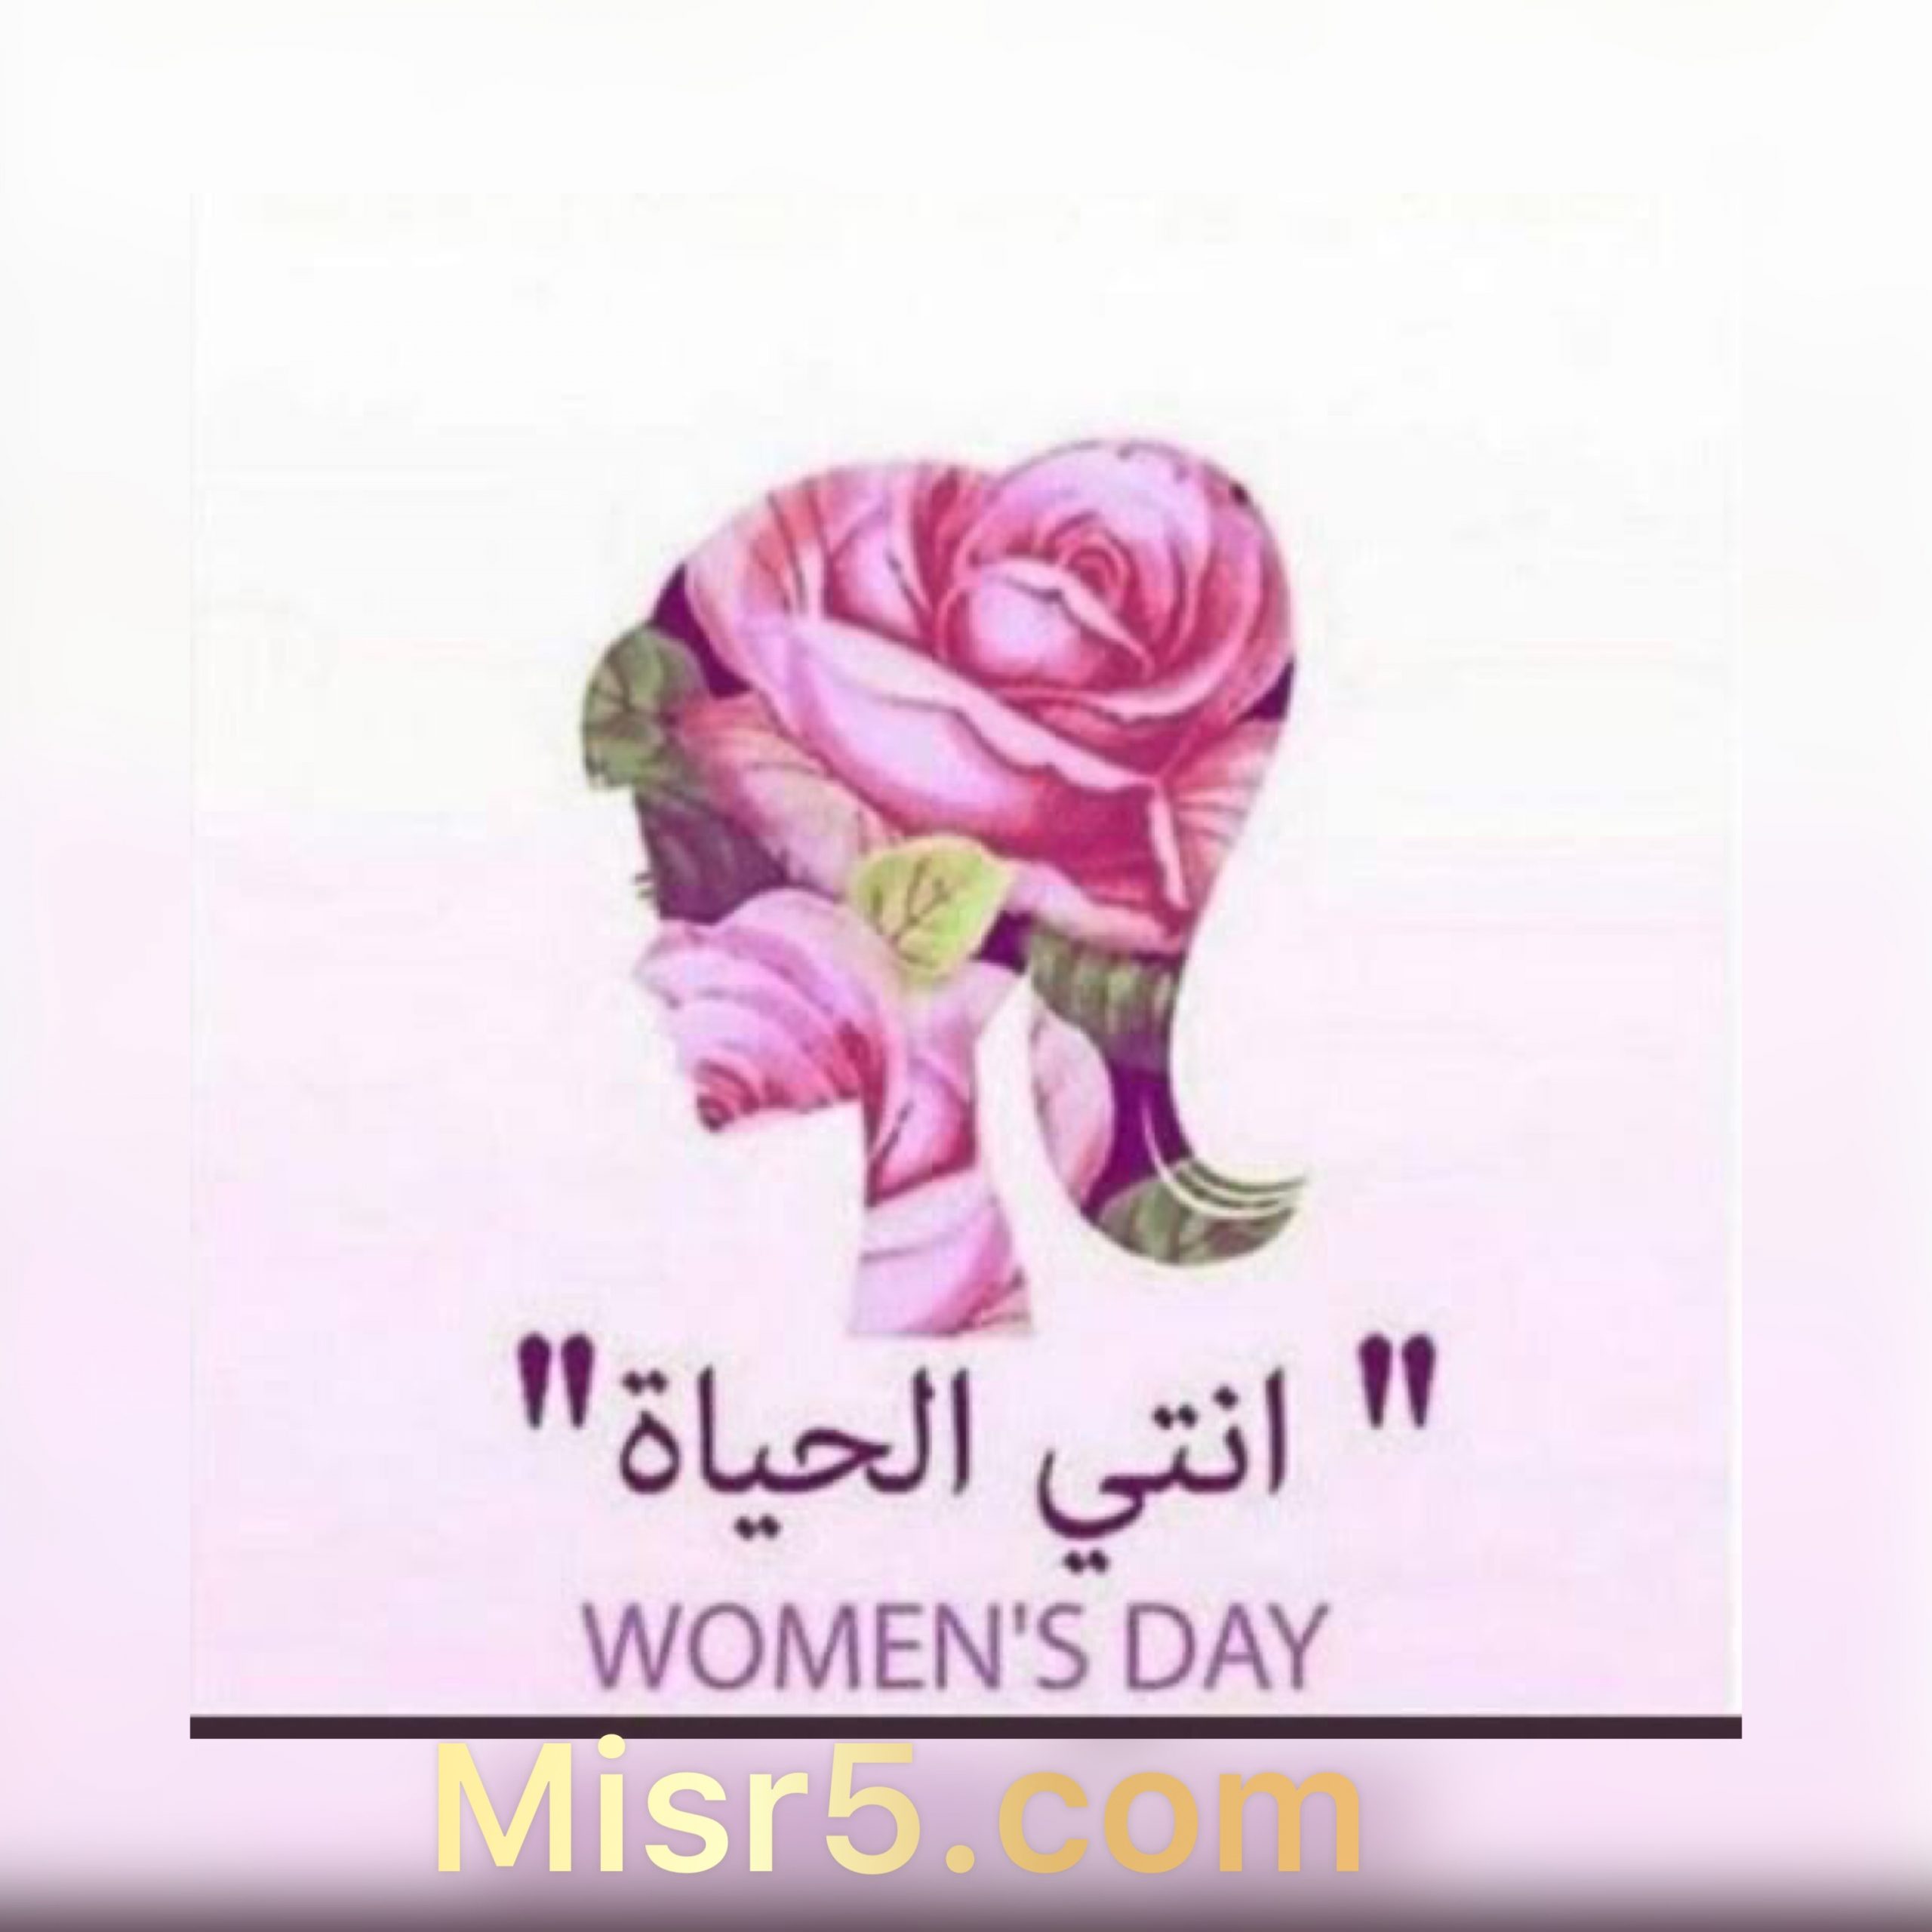 اليوم العالمي للمرأة يوم عيد لكل امرأة